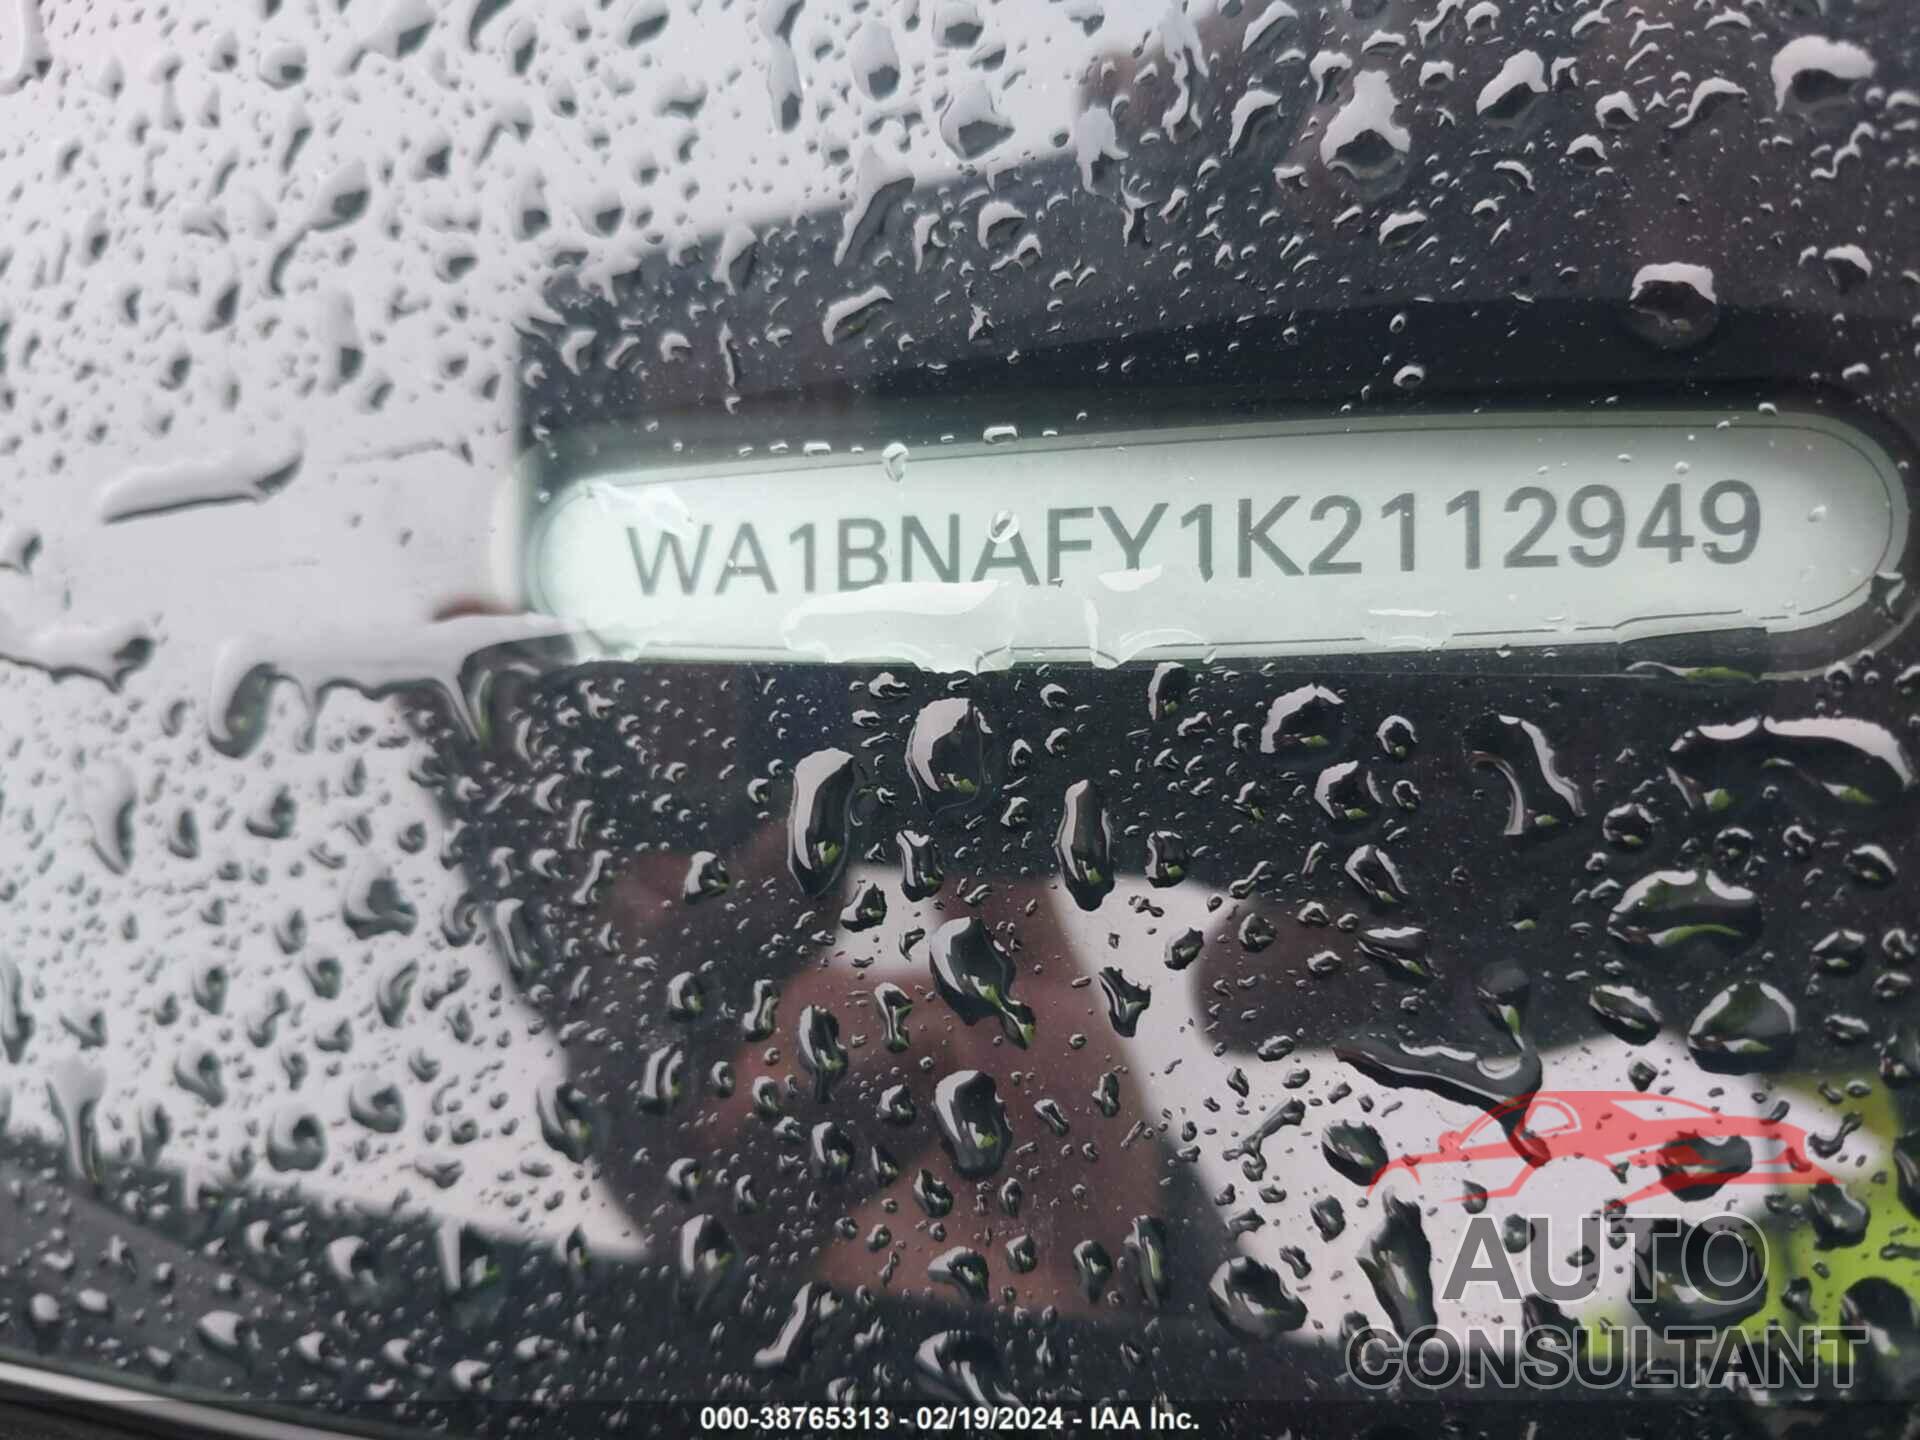 AUDI Q5 2019 - WA1BNAFY1K2112949